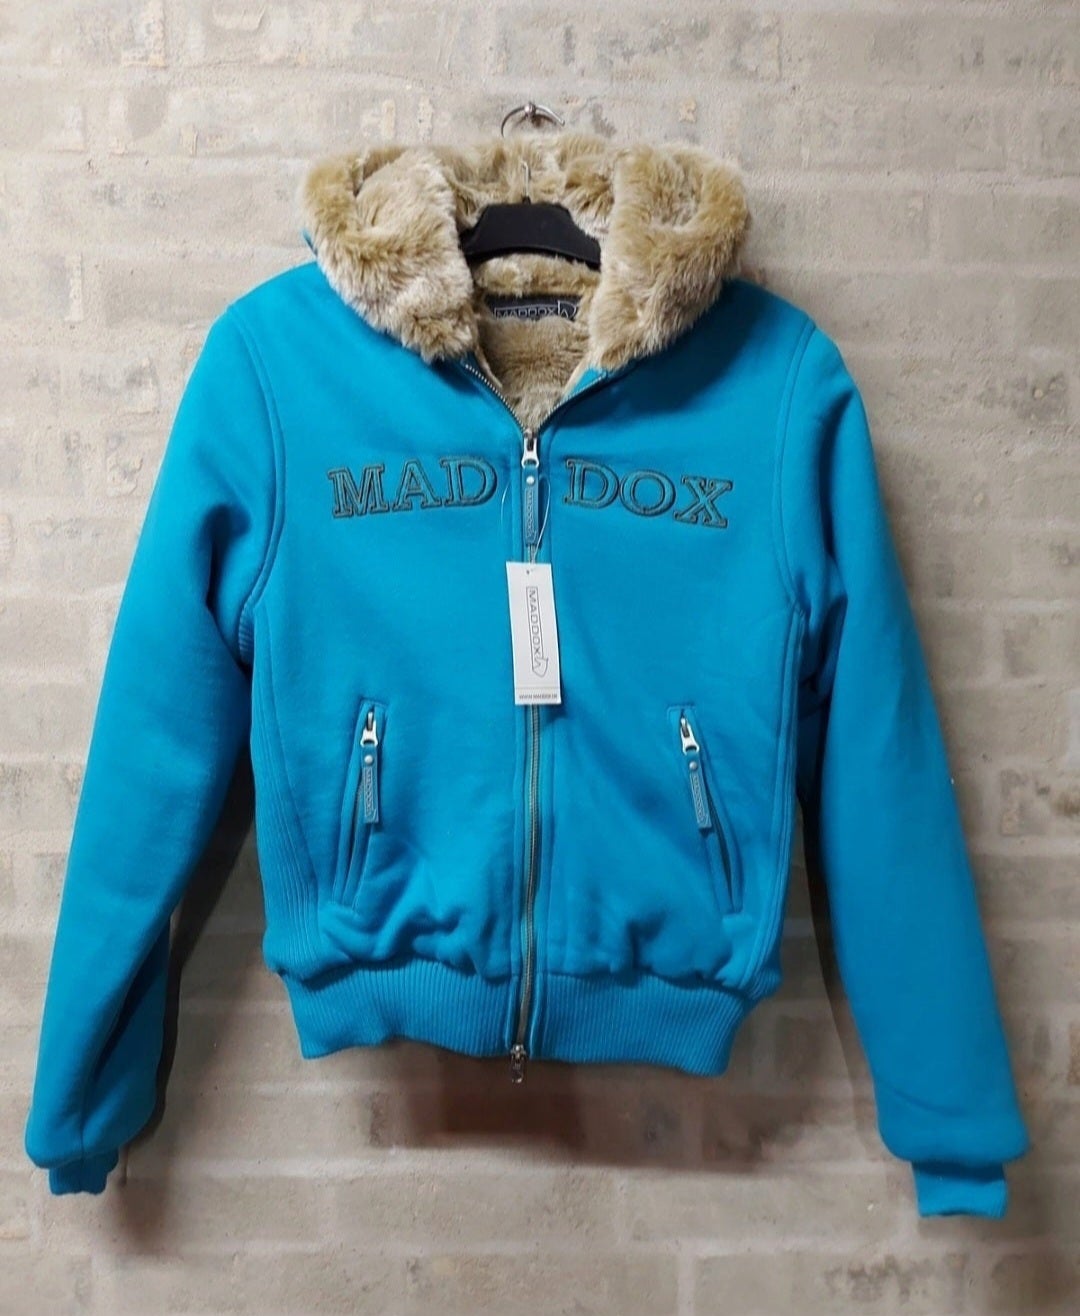 Andet ridetøj, Maddox jakke, str. XXS - XS - S - XXL